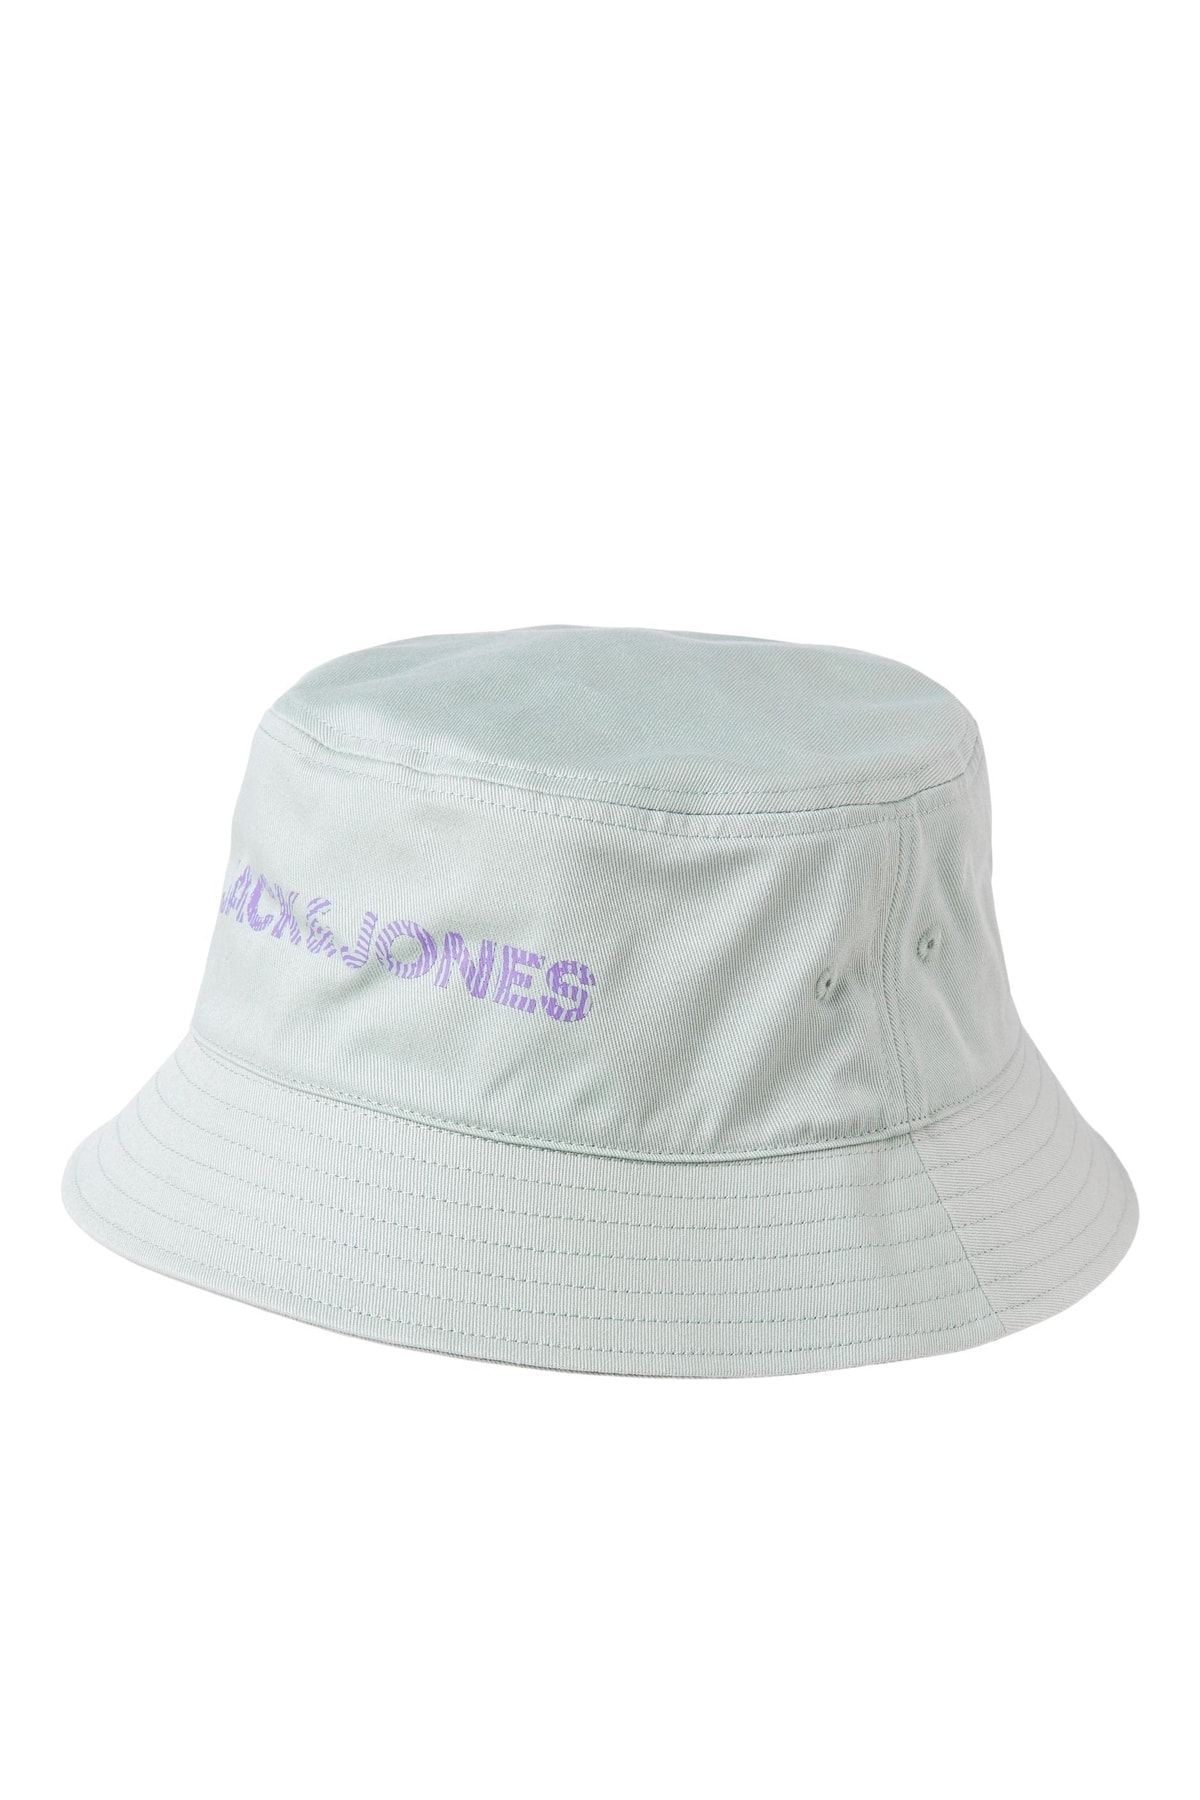 Jack & Jones Jack Jones Adrıan Bucket Hat Erkek Gri Şapka 12235410-05